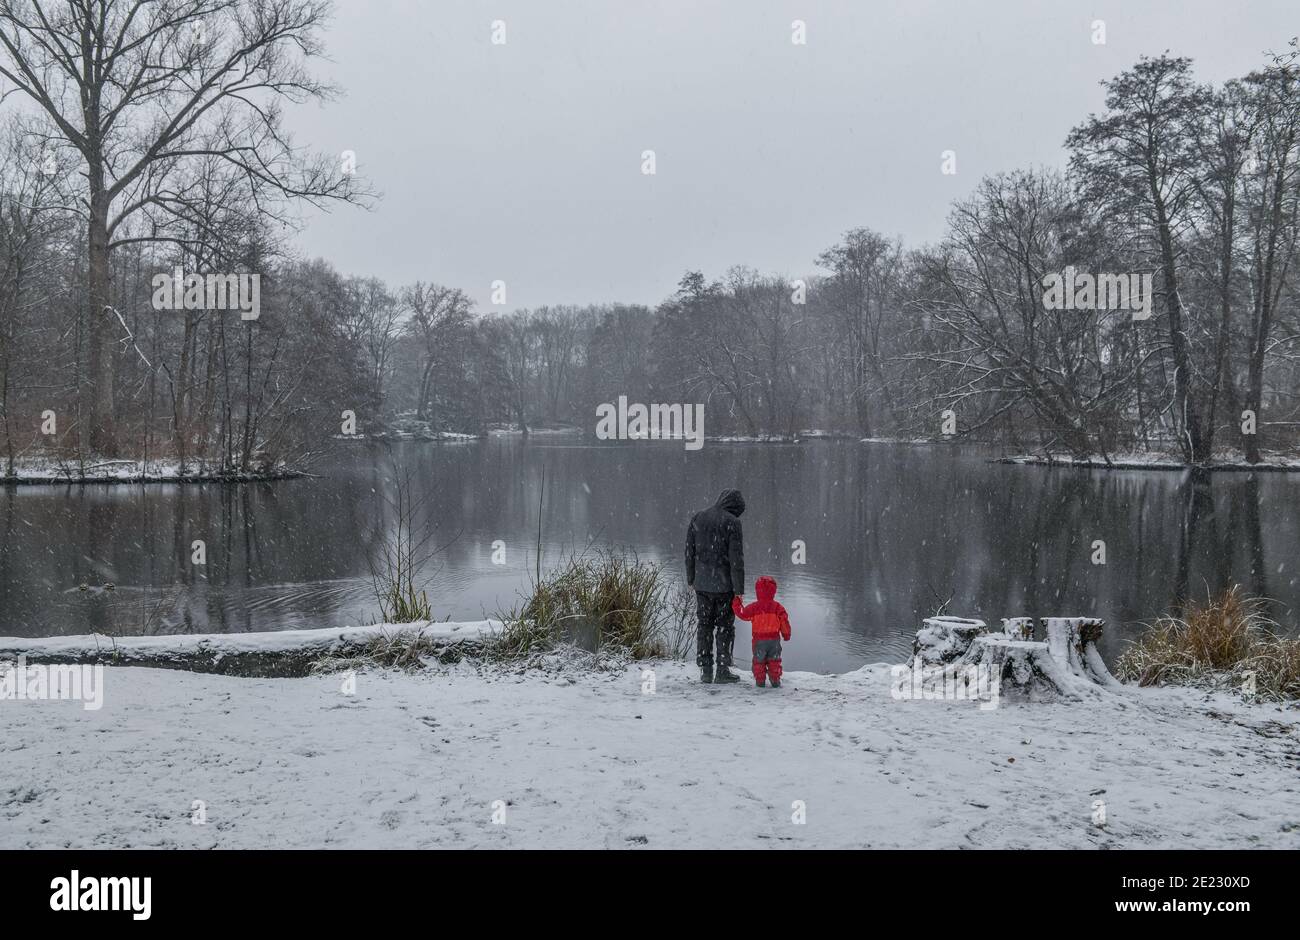 Berlin 03.01.2021: Winterlich, Neuer See, Schnee, Grosser Tiergarten, Park, Berlin, Deutschland Stock Photo